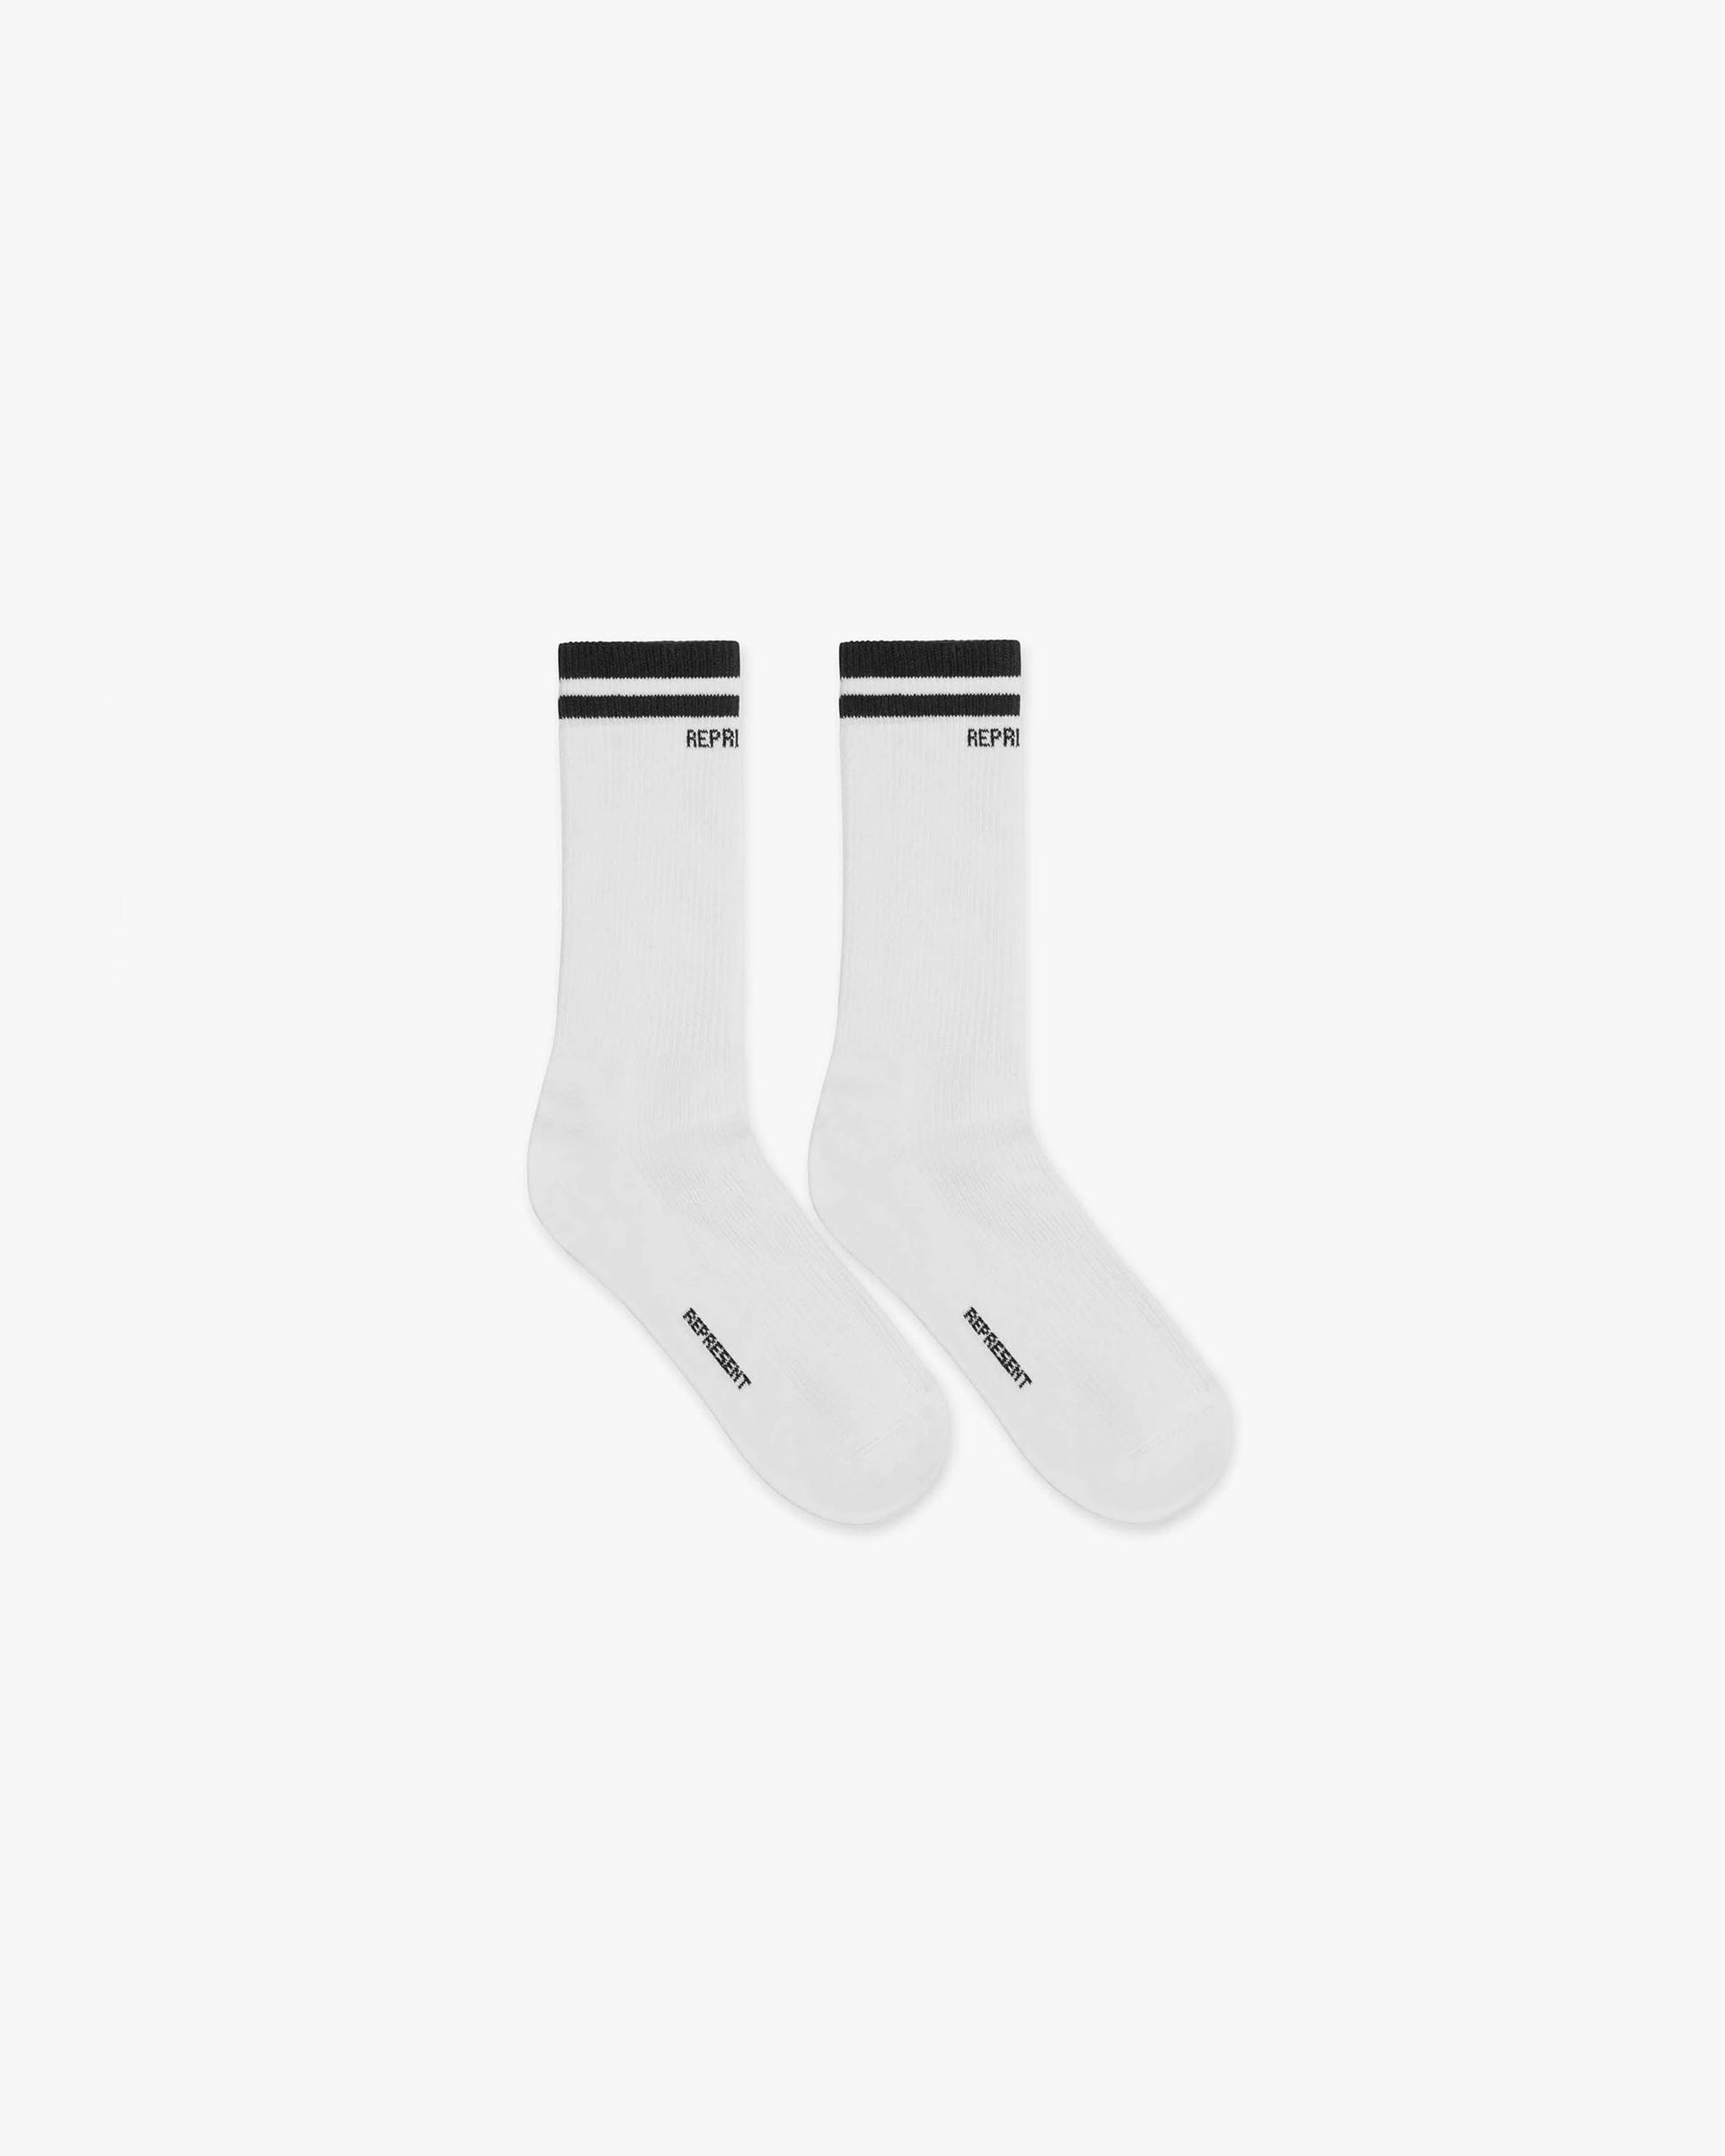 Represent College Socks | Black Accessories SS23 | Represent Clo